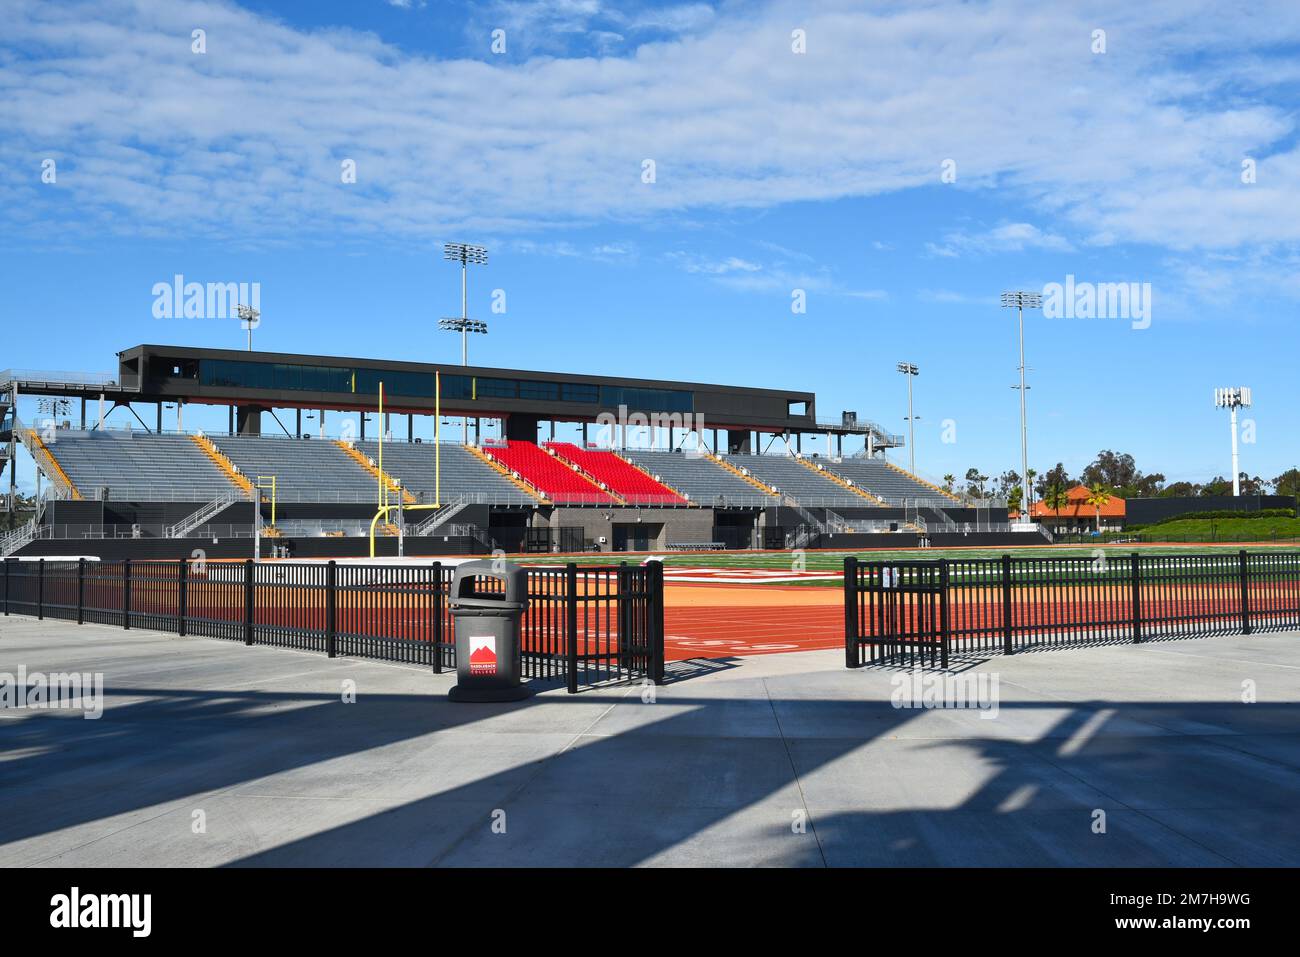 MISSIONE VIEJO, CALIFORNIA - 8 GENNAIO 2023: Stadio di calcio Grandstand sul campus del Saddleback College. Foto Stock